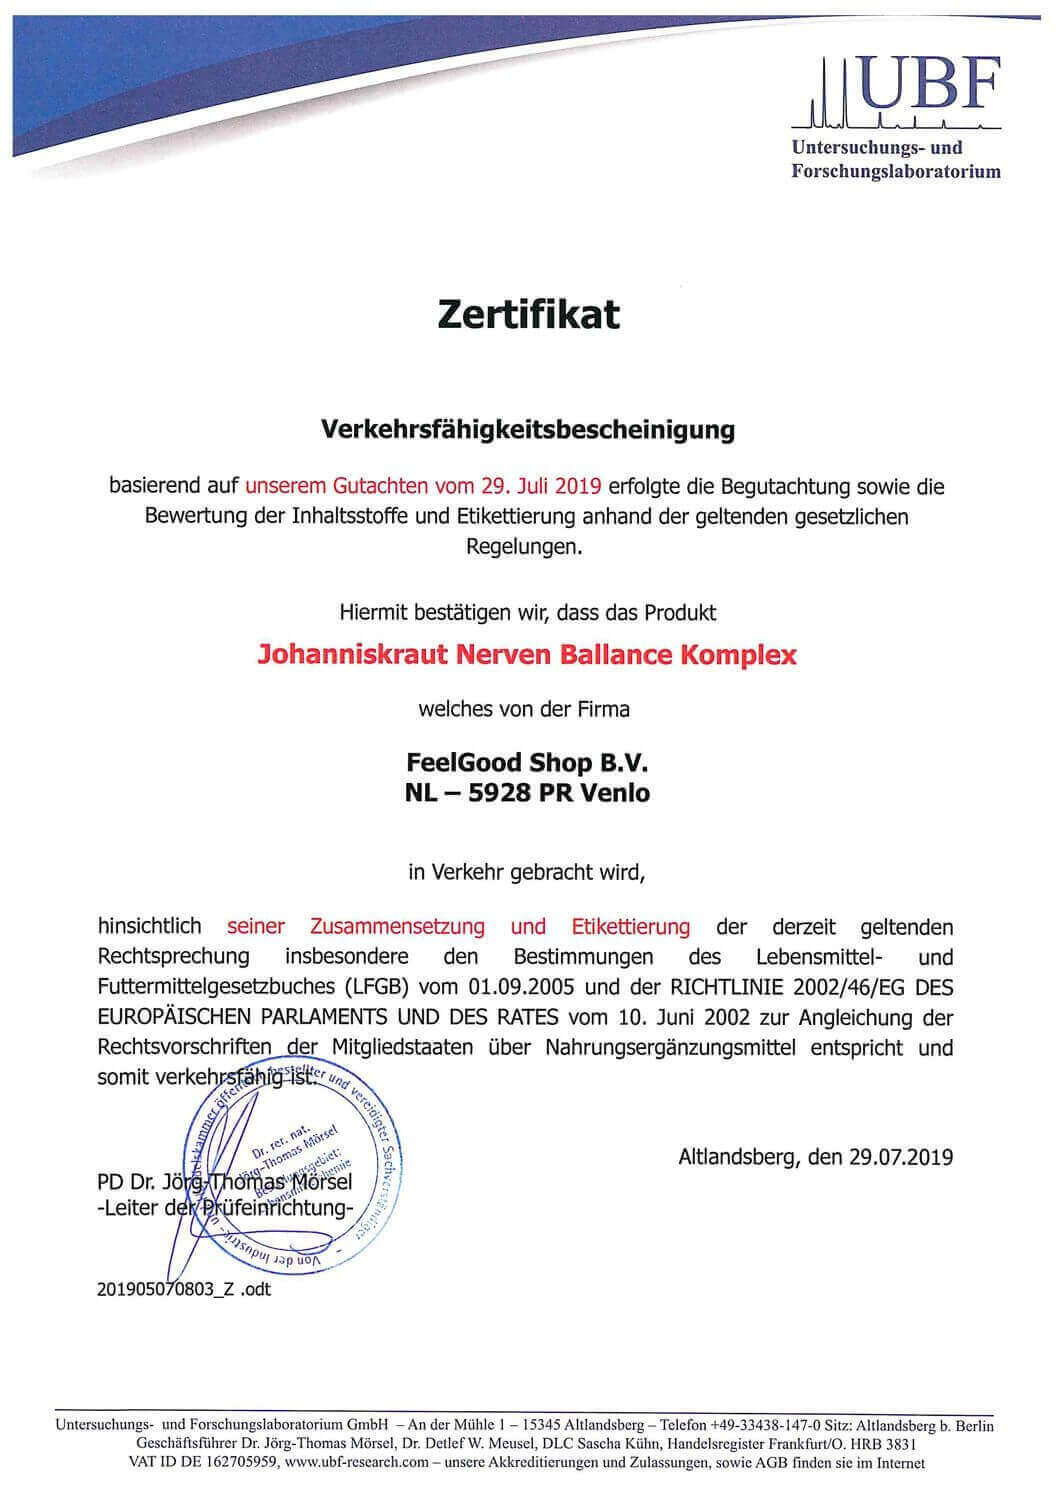 JOHANNISKRAUT - Nerven Balance Complex Zertifikat